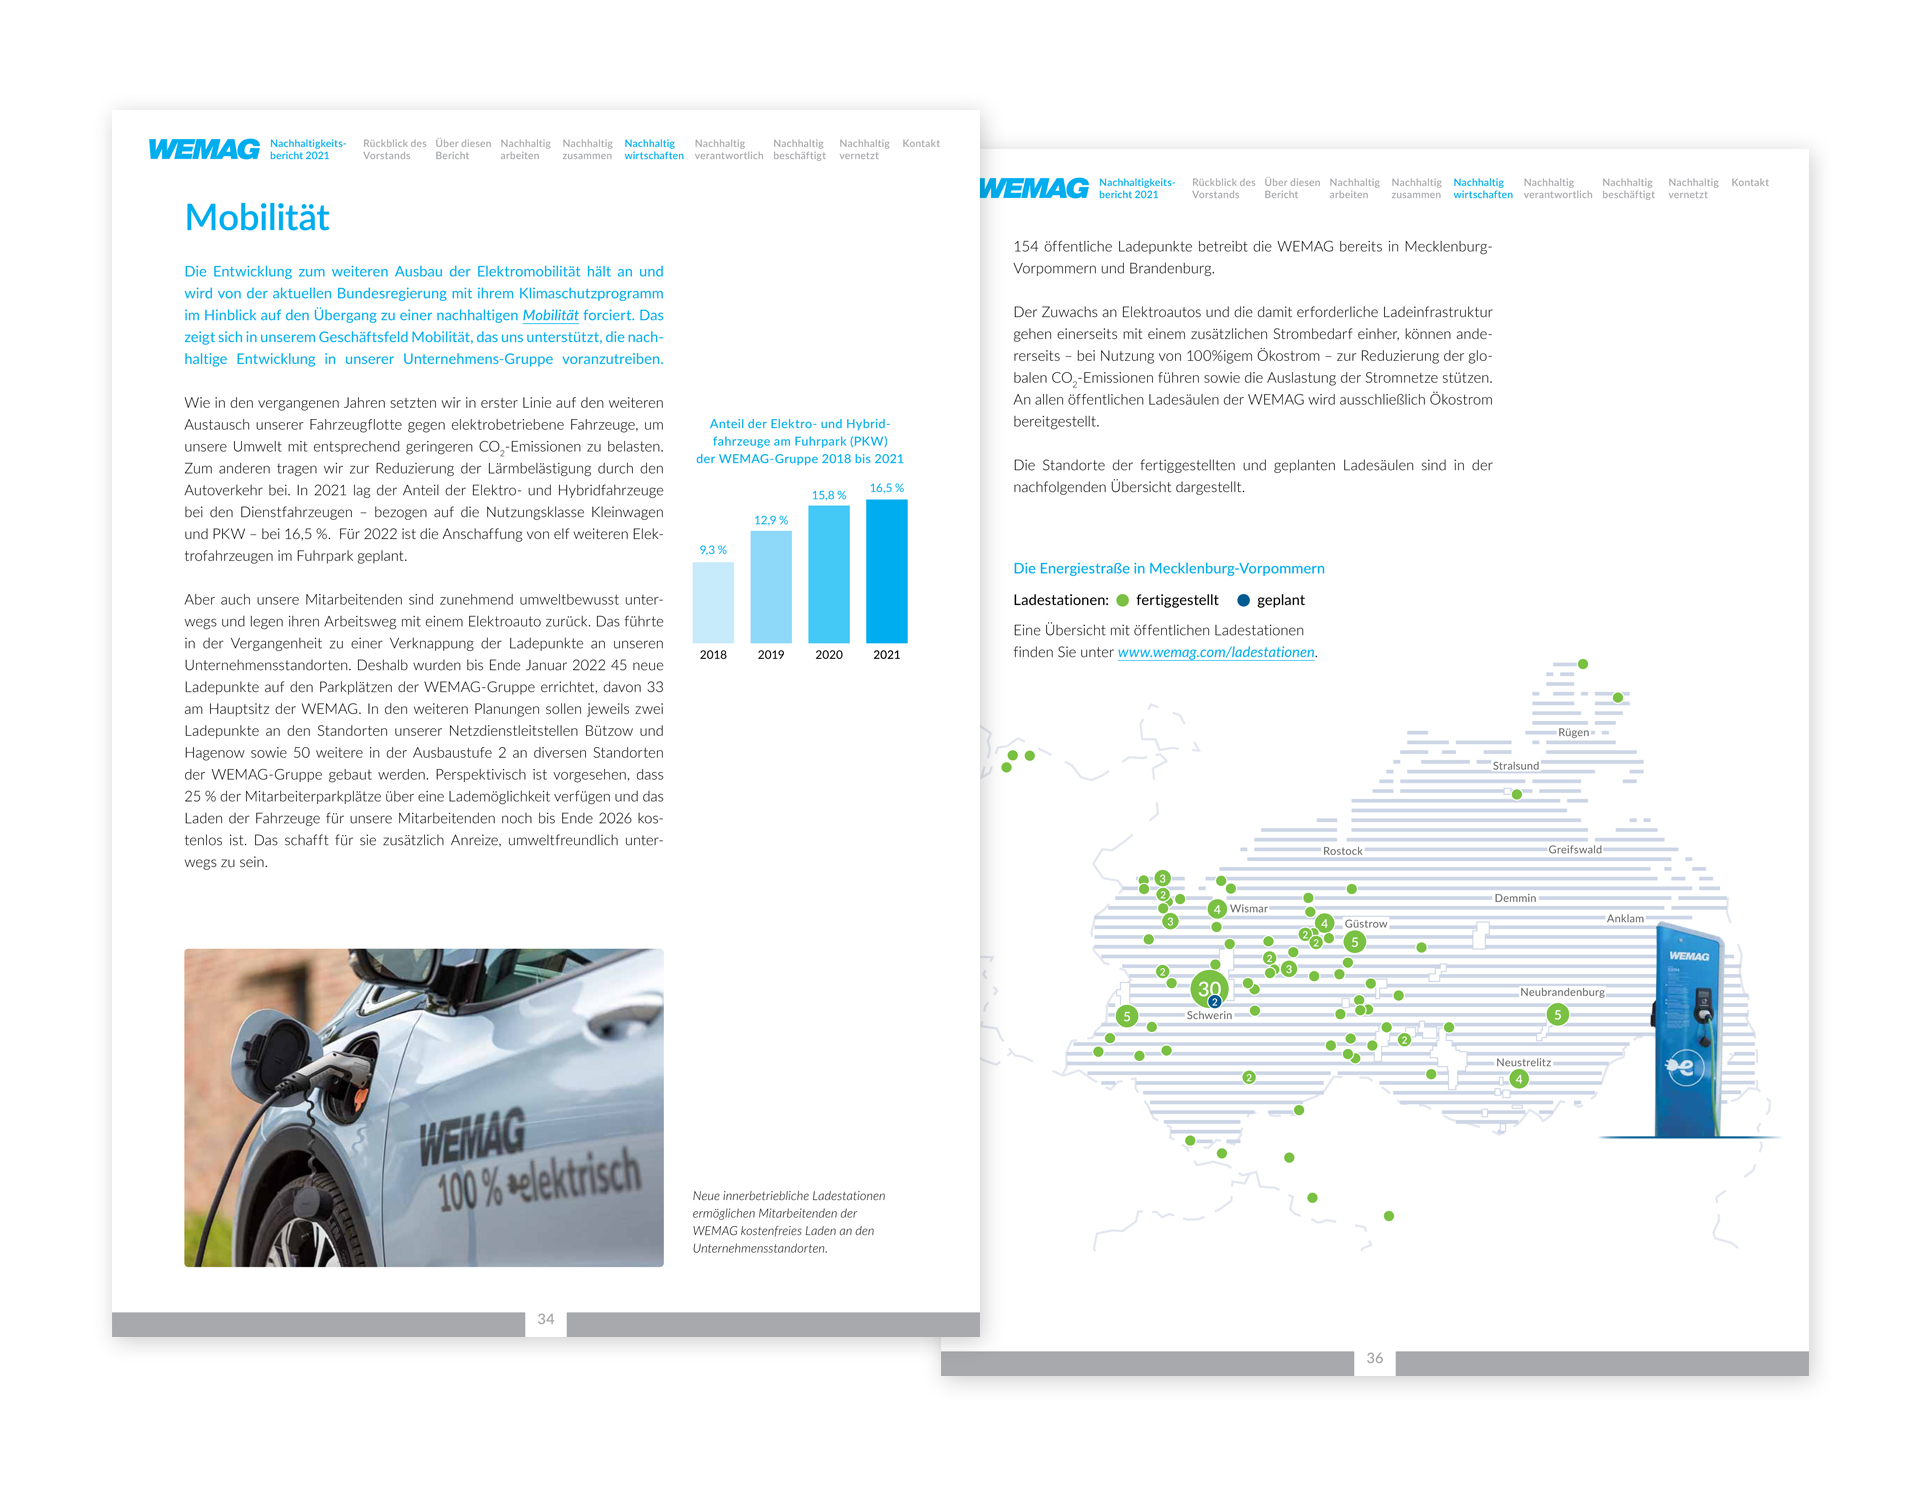 Gestaltung für Nachhaltigkeitsberichts der WEMAG mit Beitrag zur Elektromobilität